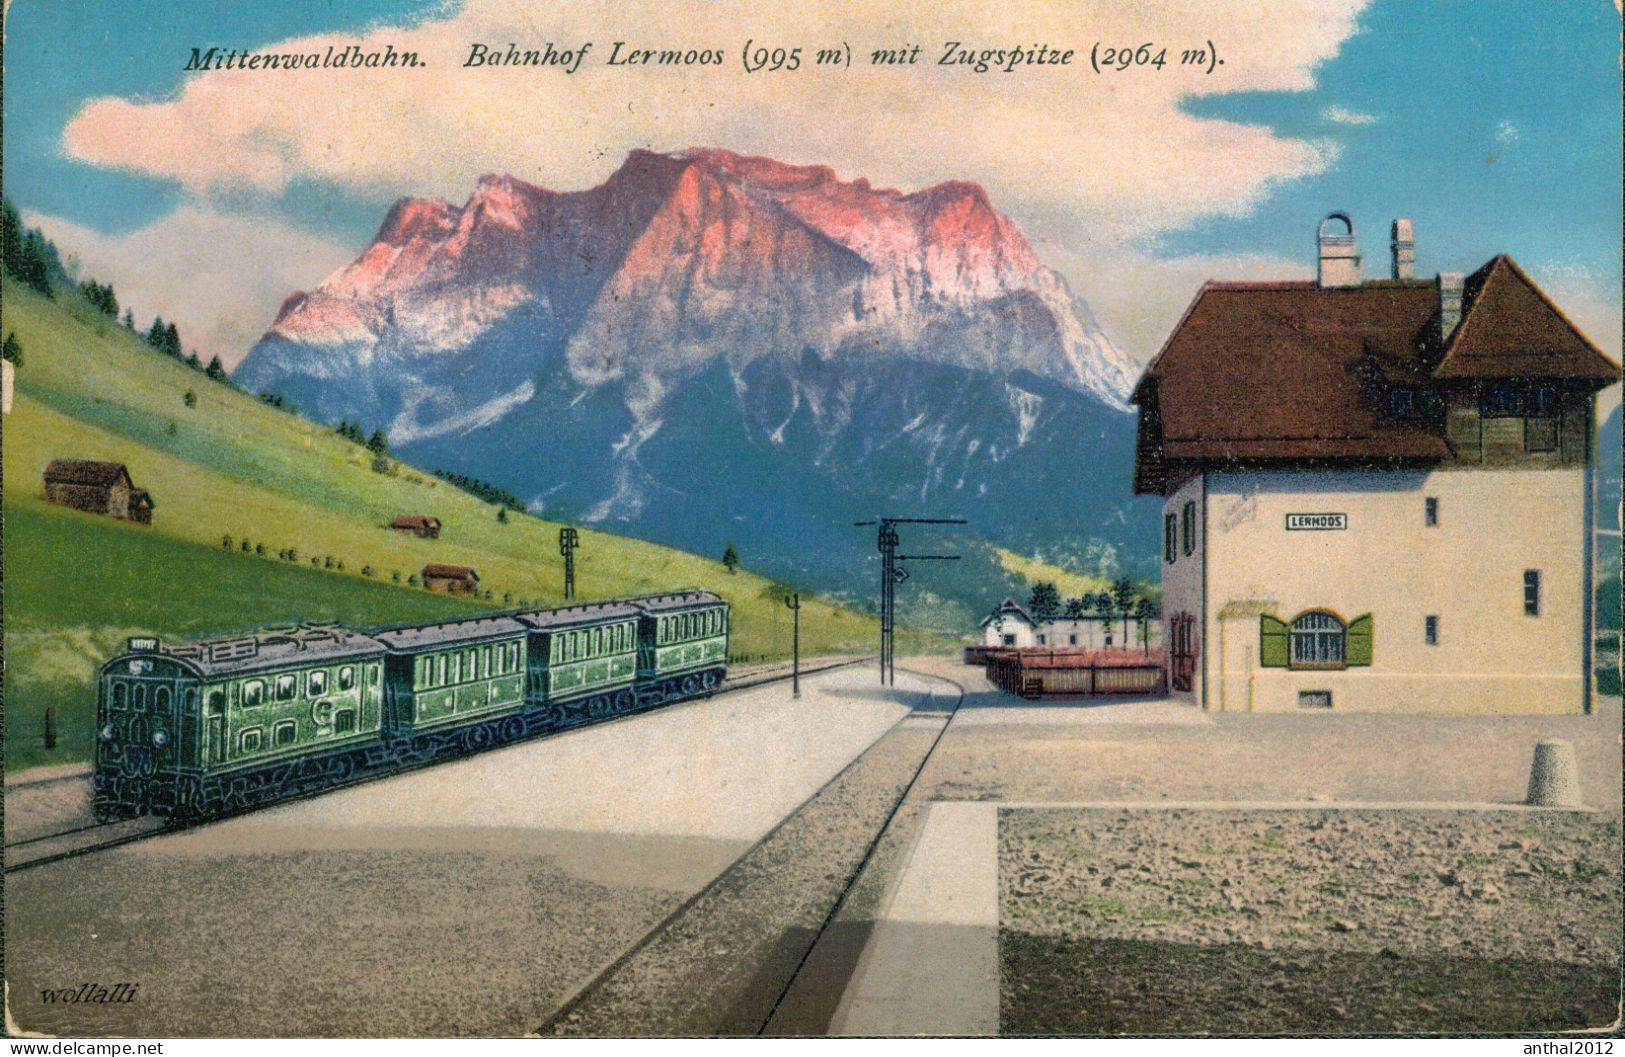 Superrar Bahnhof La Gare Lermoos Österreich Tirol Mit Zug 24.5.1921 Zugspitze - Stations - Met Treinen